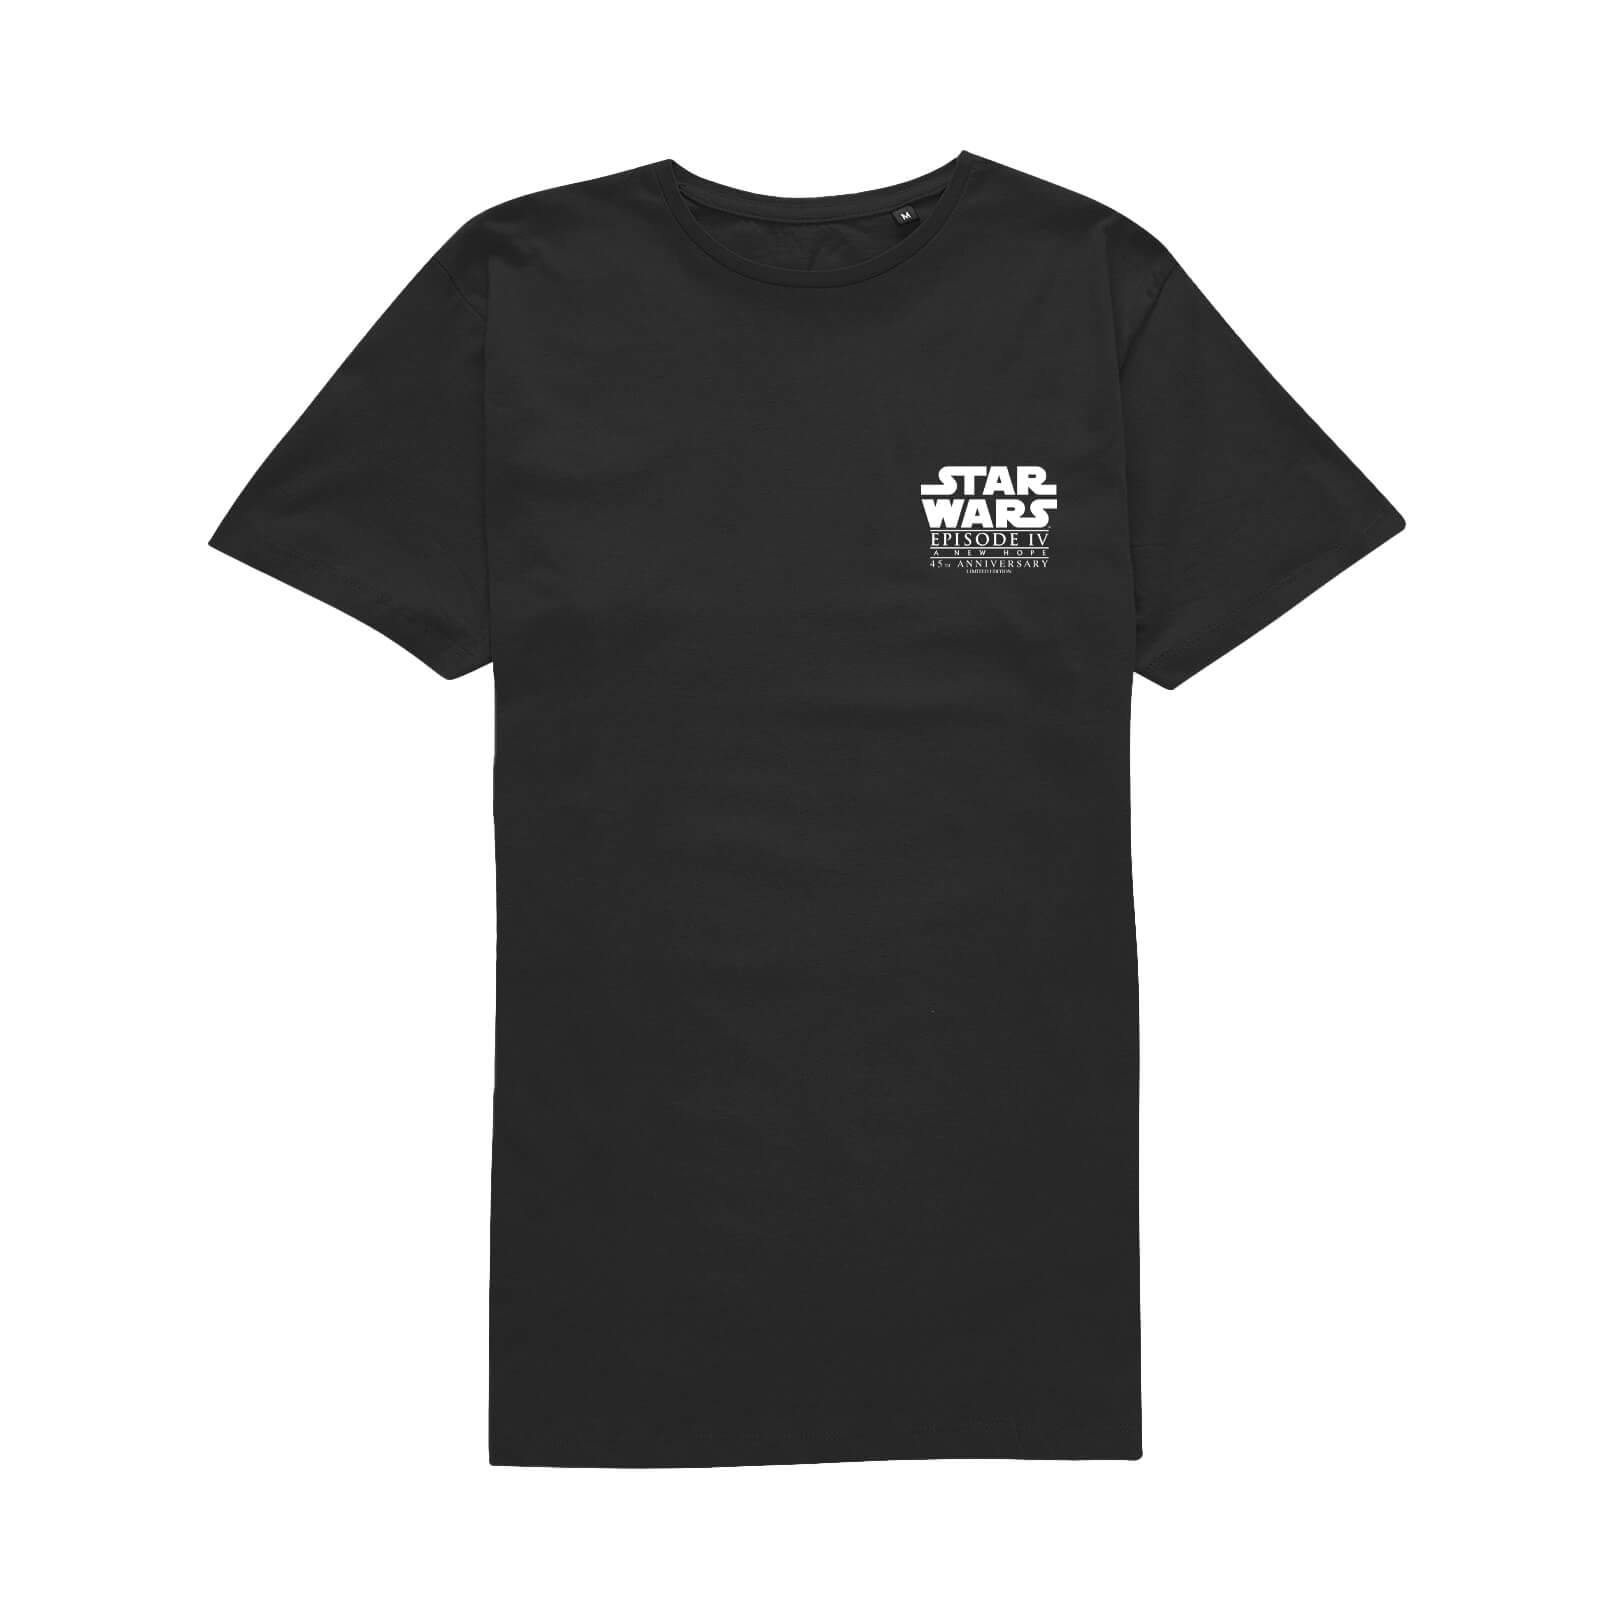 Star Wars - Un Nouvel Espoir - 45e anniversaire Épisode IV Unisexe T-Shirt - Noir - S